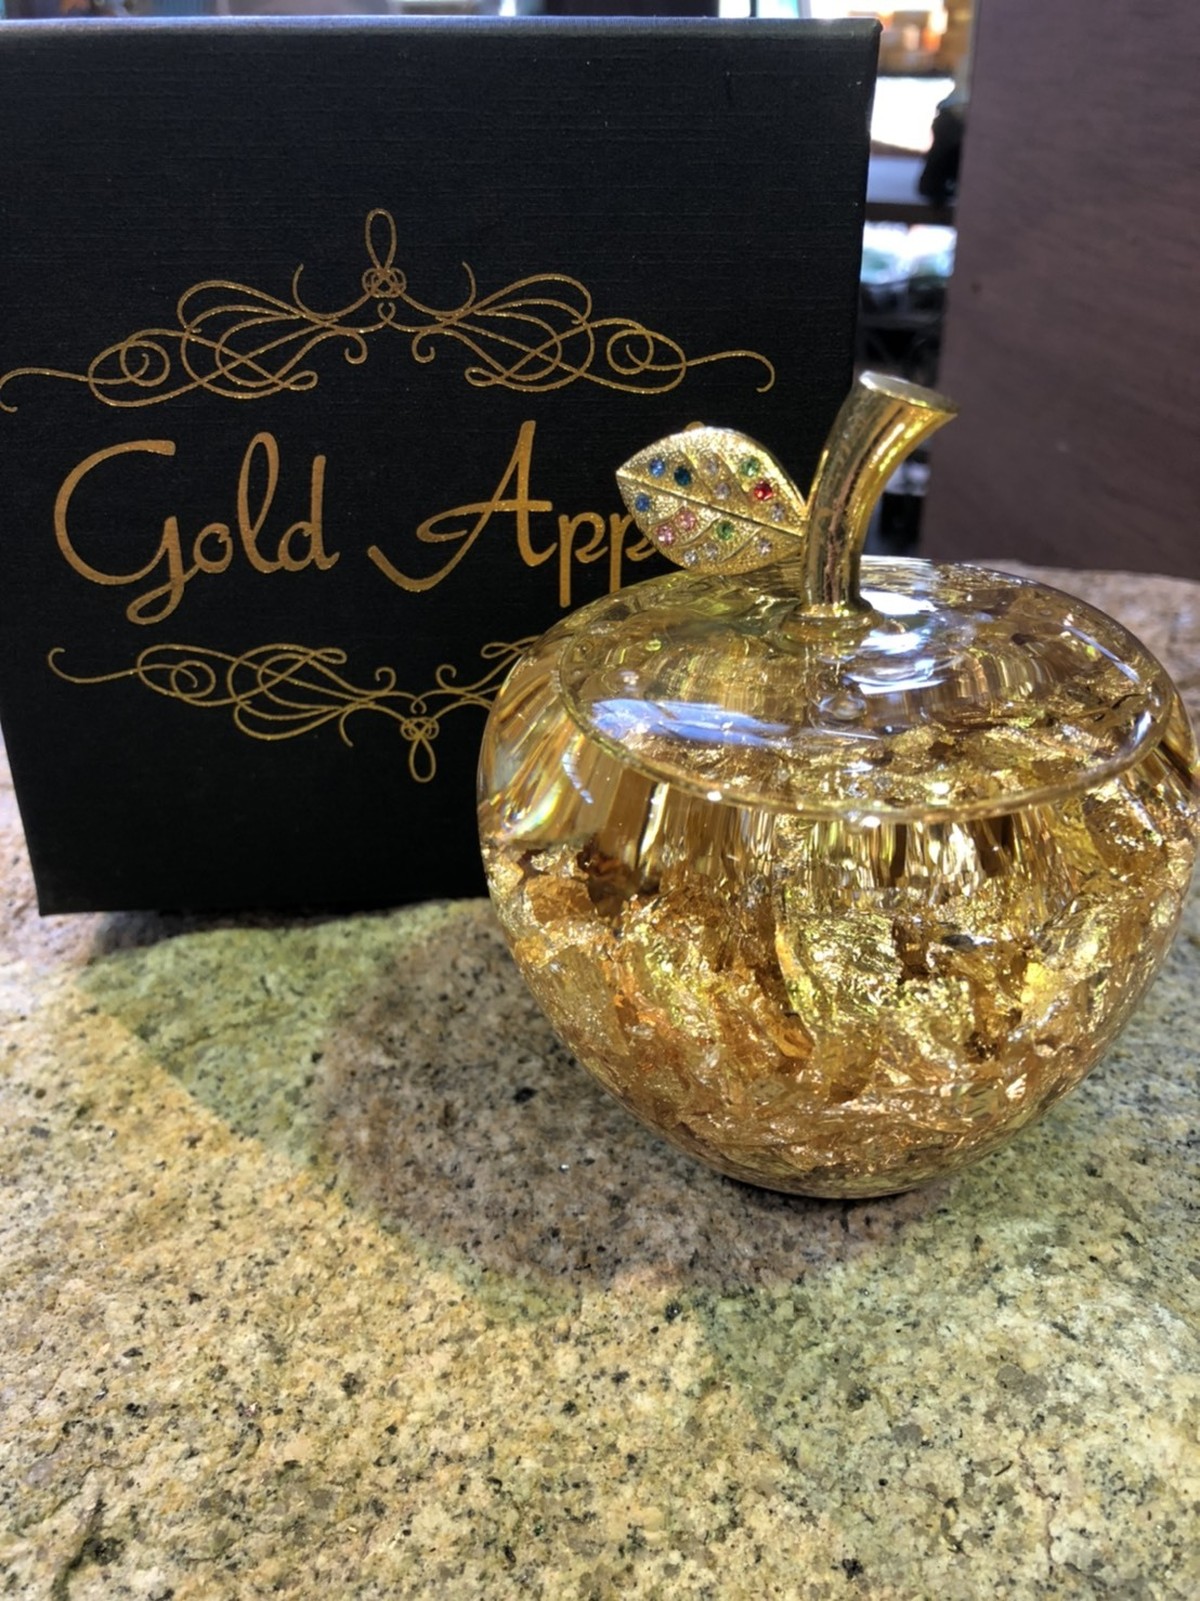 金のりんご ゴールドアップル Gold Apple 金運up 長寿祈願 フラワーギフトのオンラインショップ 花と猫と私 By ハートフラワー